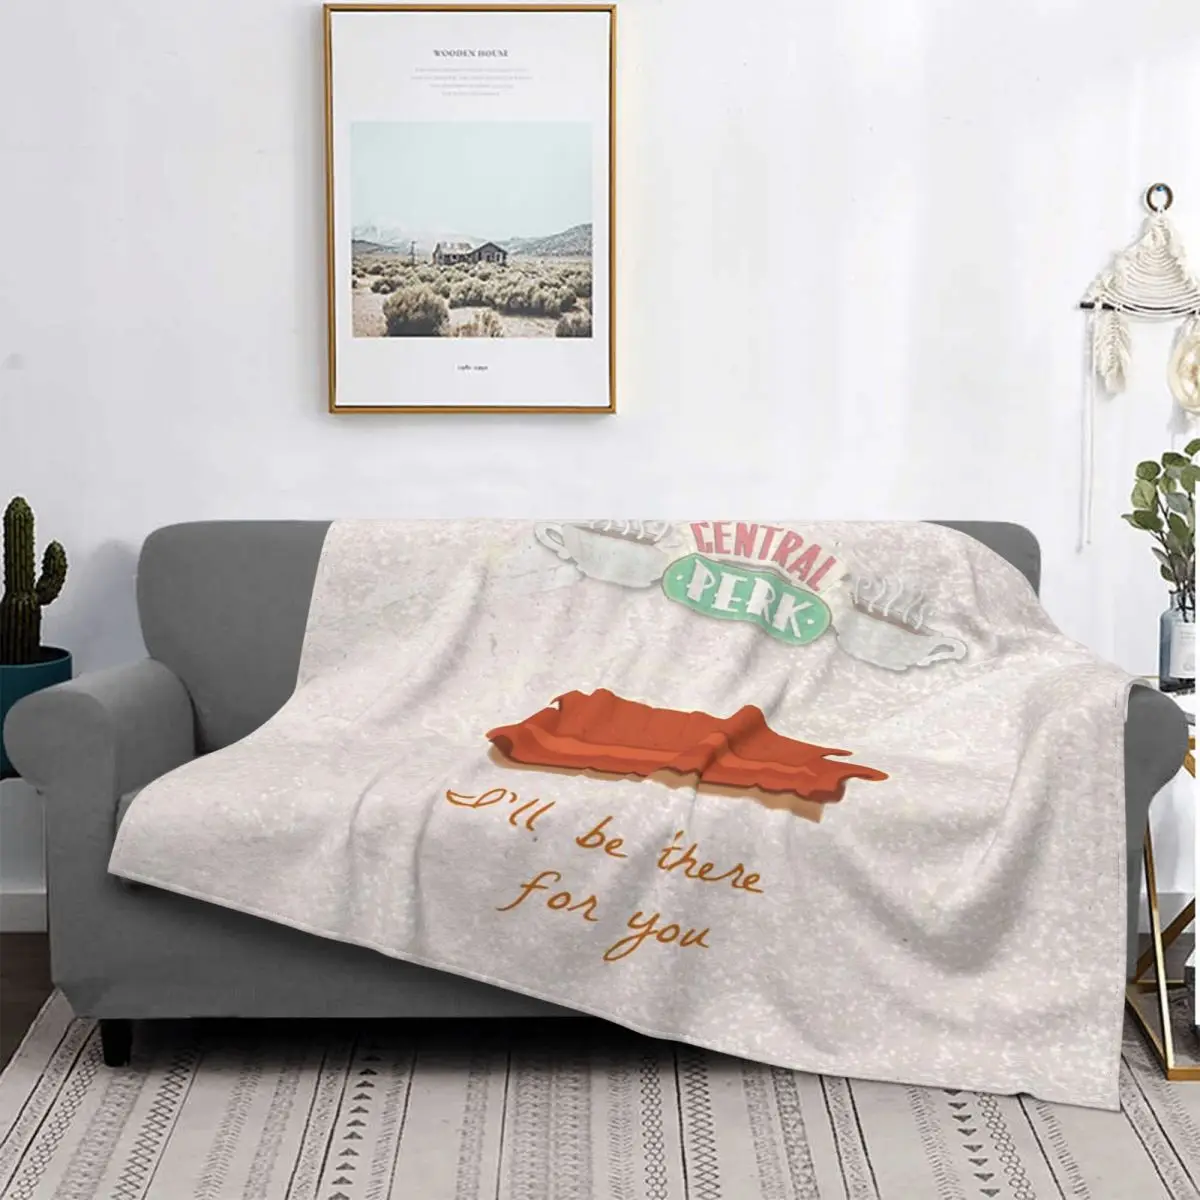 

Одеяло для друзей покрывало для кровати плед муслиновый плед для дивана муслиновое одеяло детский чехол